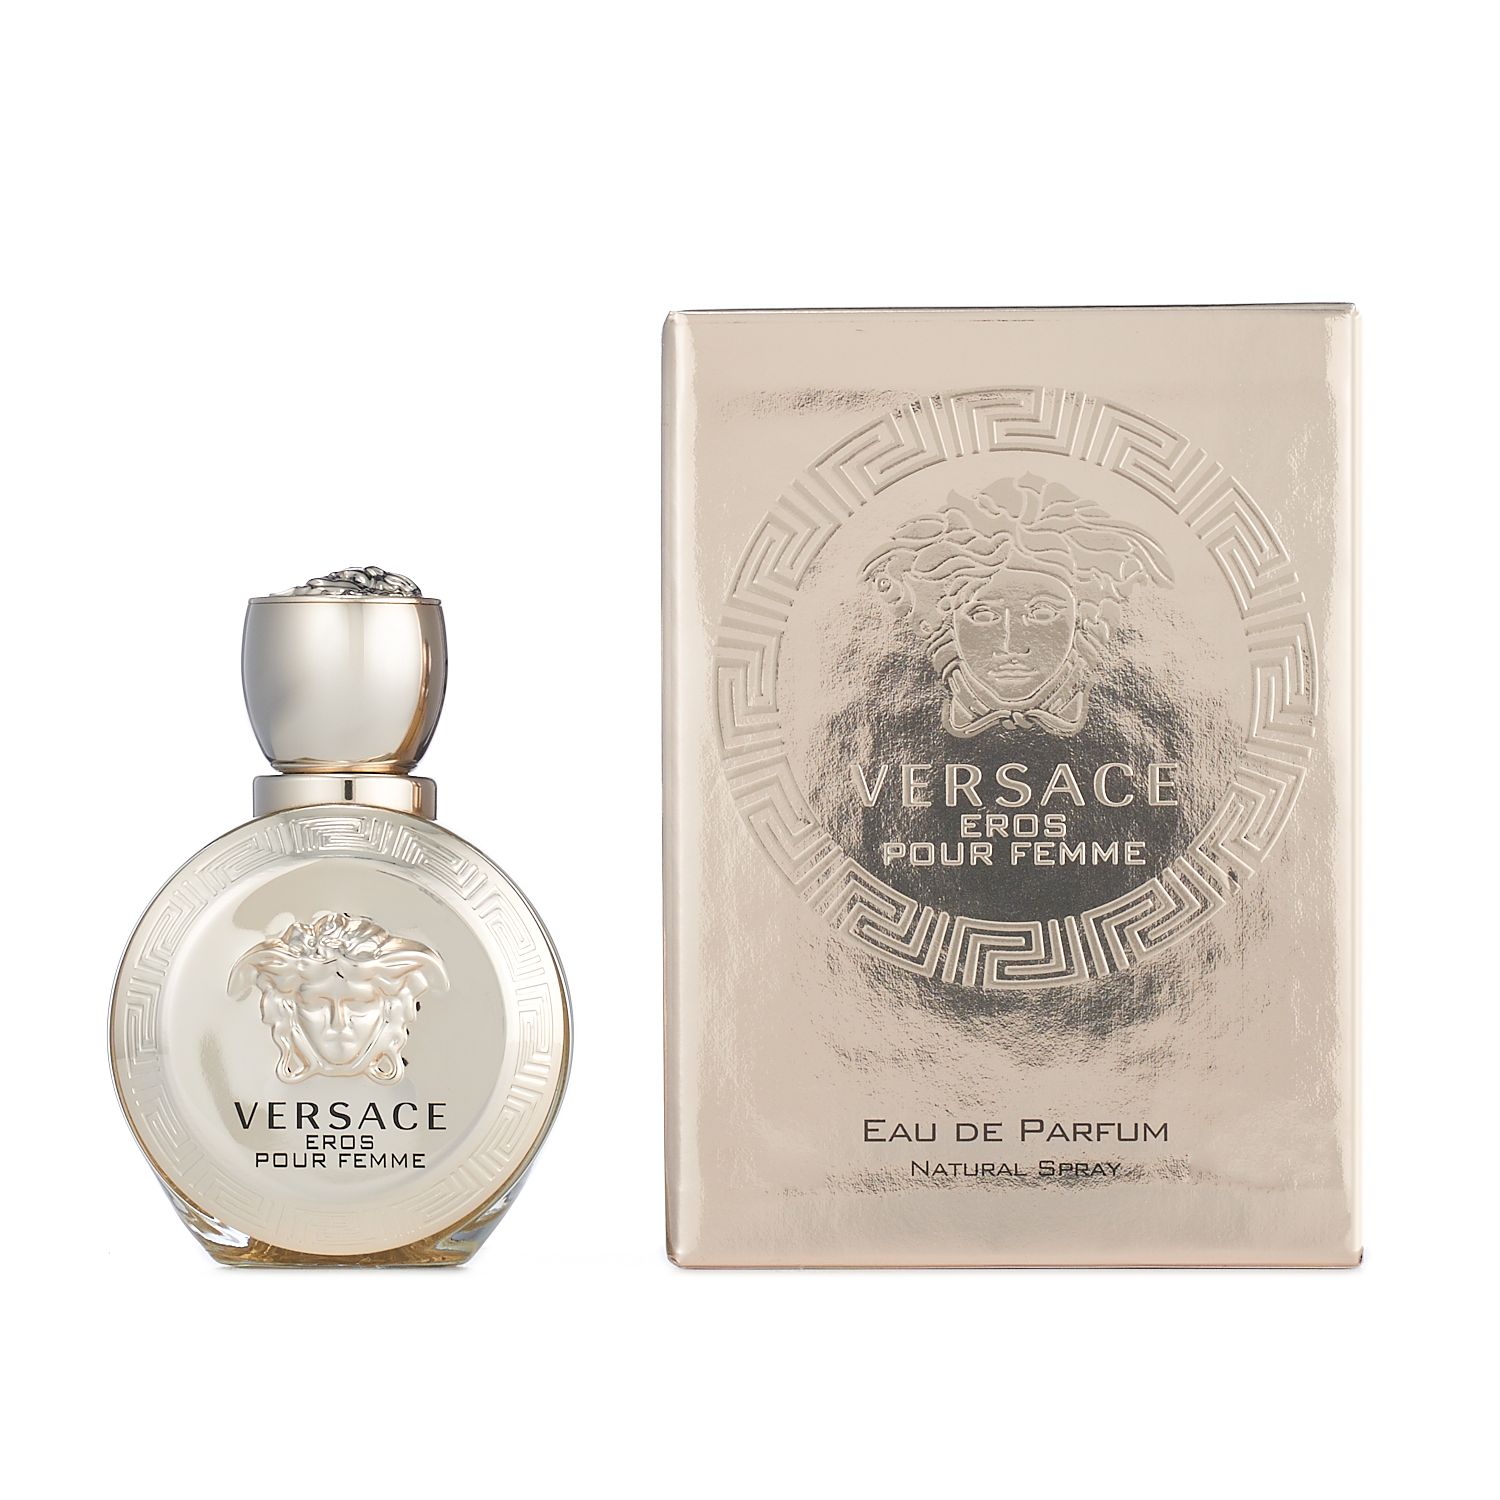 Versace Eros Pour Femme Women's Perfume 